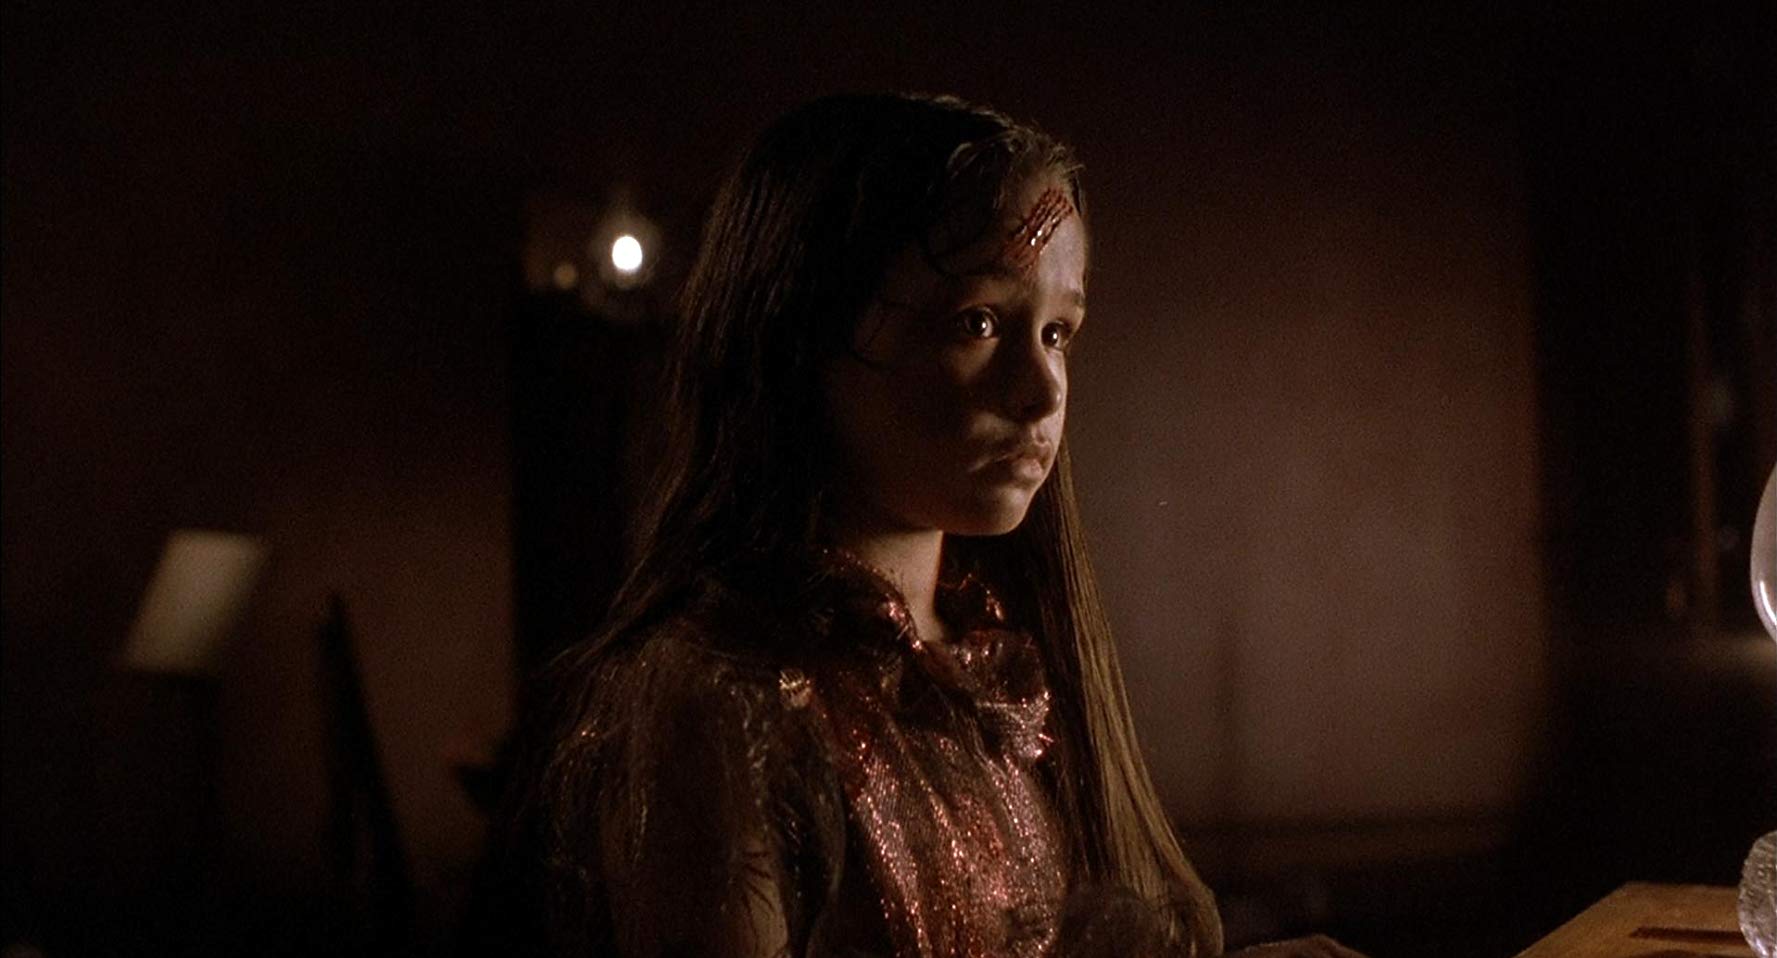 Daniella Harries as Jamie Lloyd in Halloween 5 (1989)